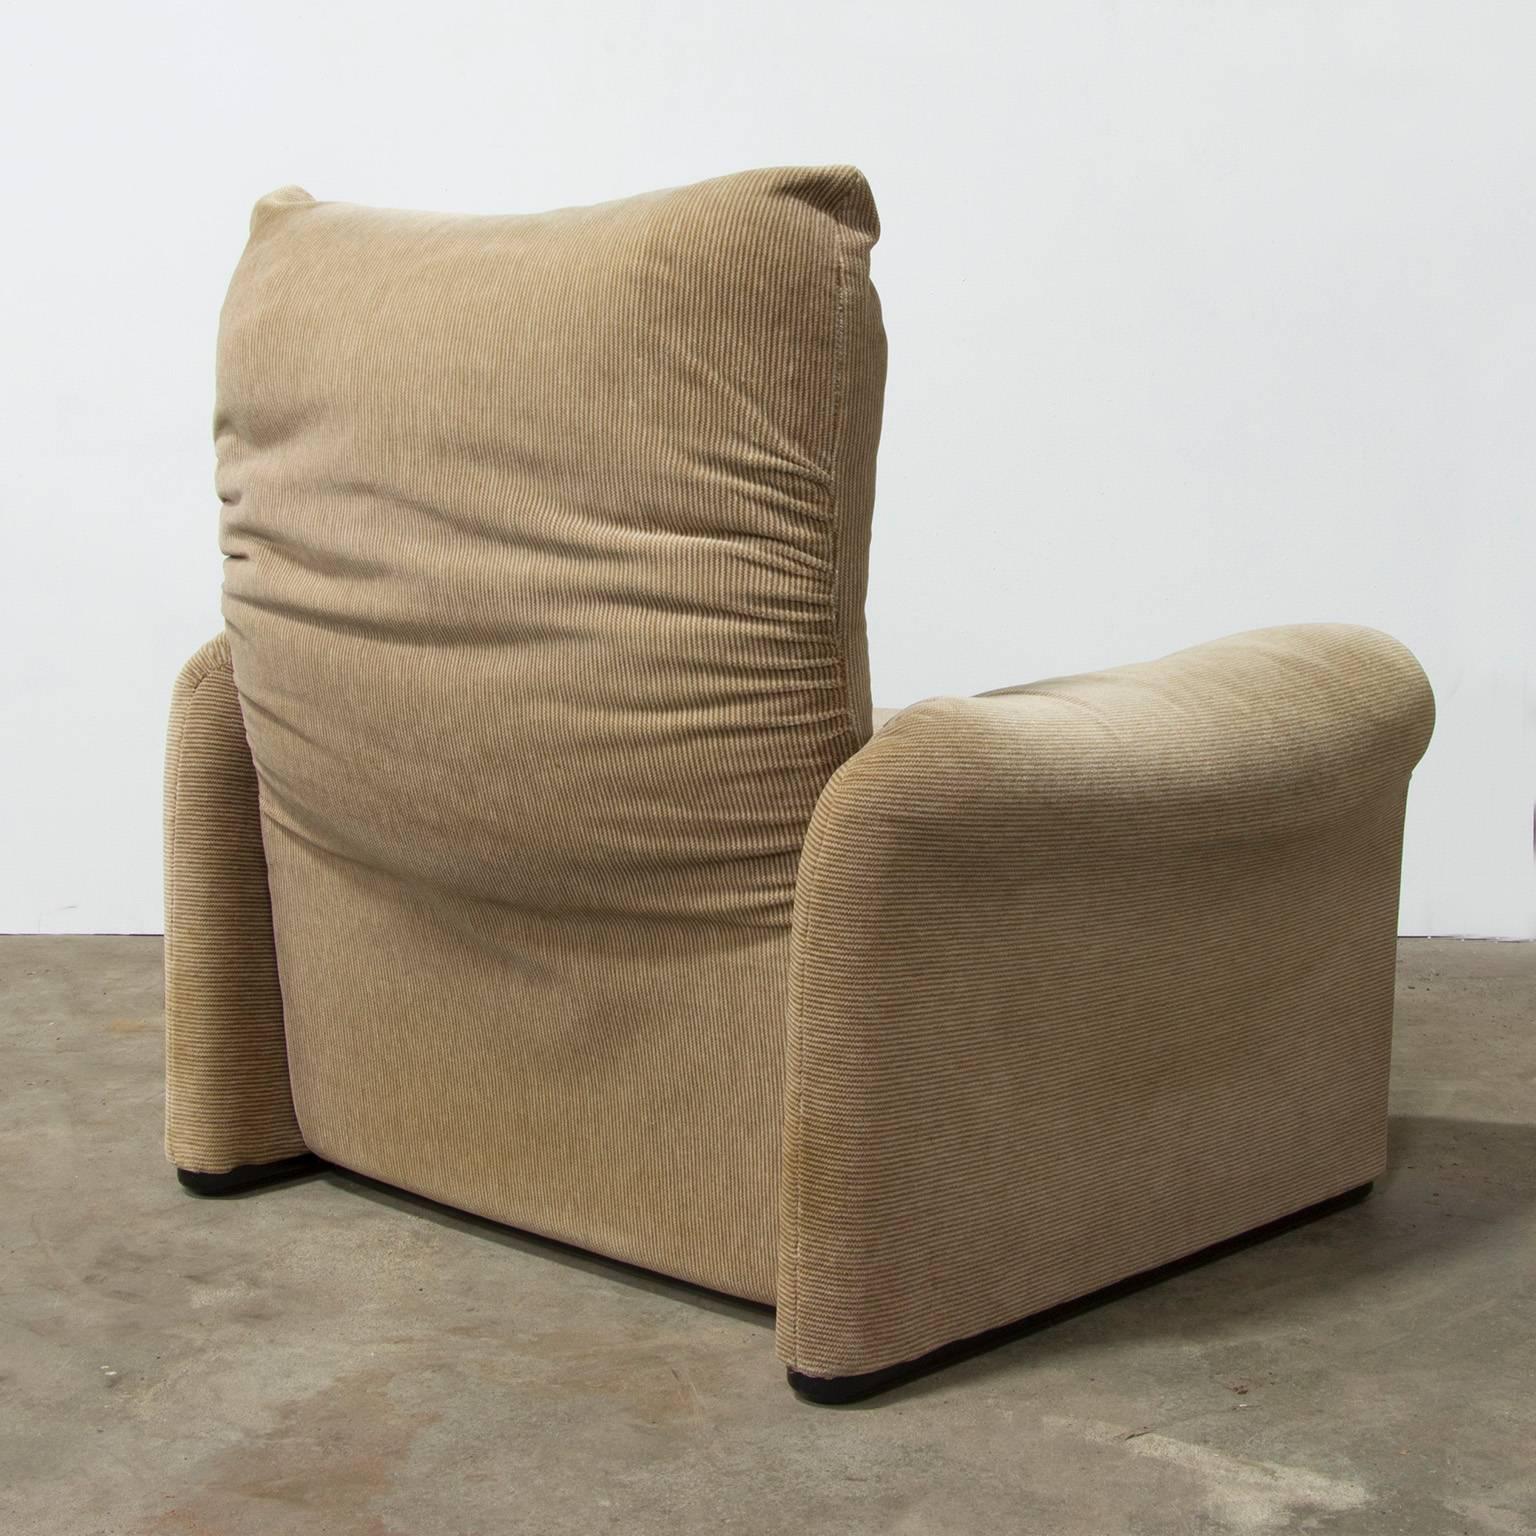 Italian 1973, Vico Magistretti for Cassina, Maralunga Chair in Original Fabric